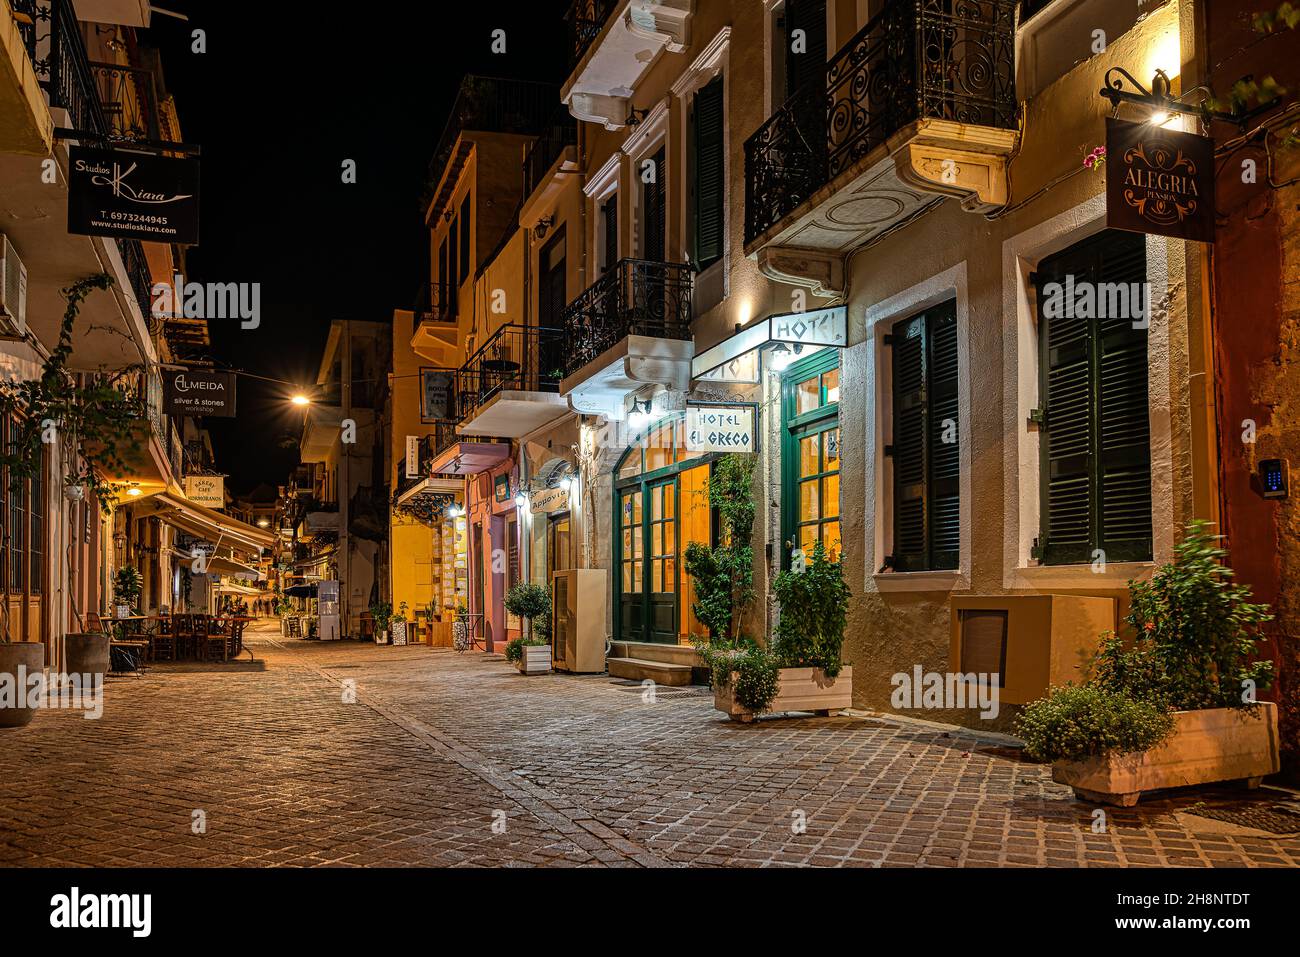 Paysage nocturne d'une rue commerçante illuminée dans la vieille ville de Chania, Ctrète, Grèce, 15 octobre 2021 Banque D'Images